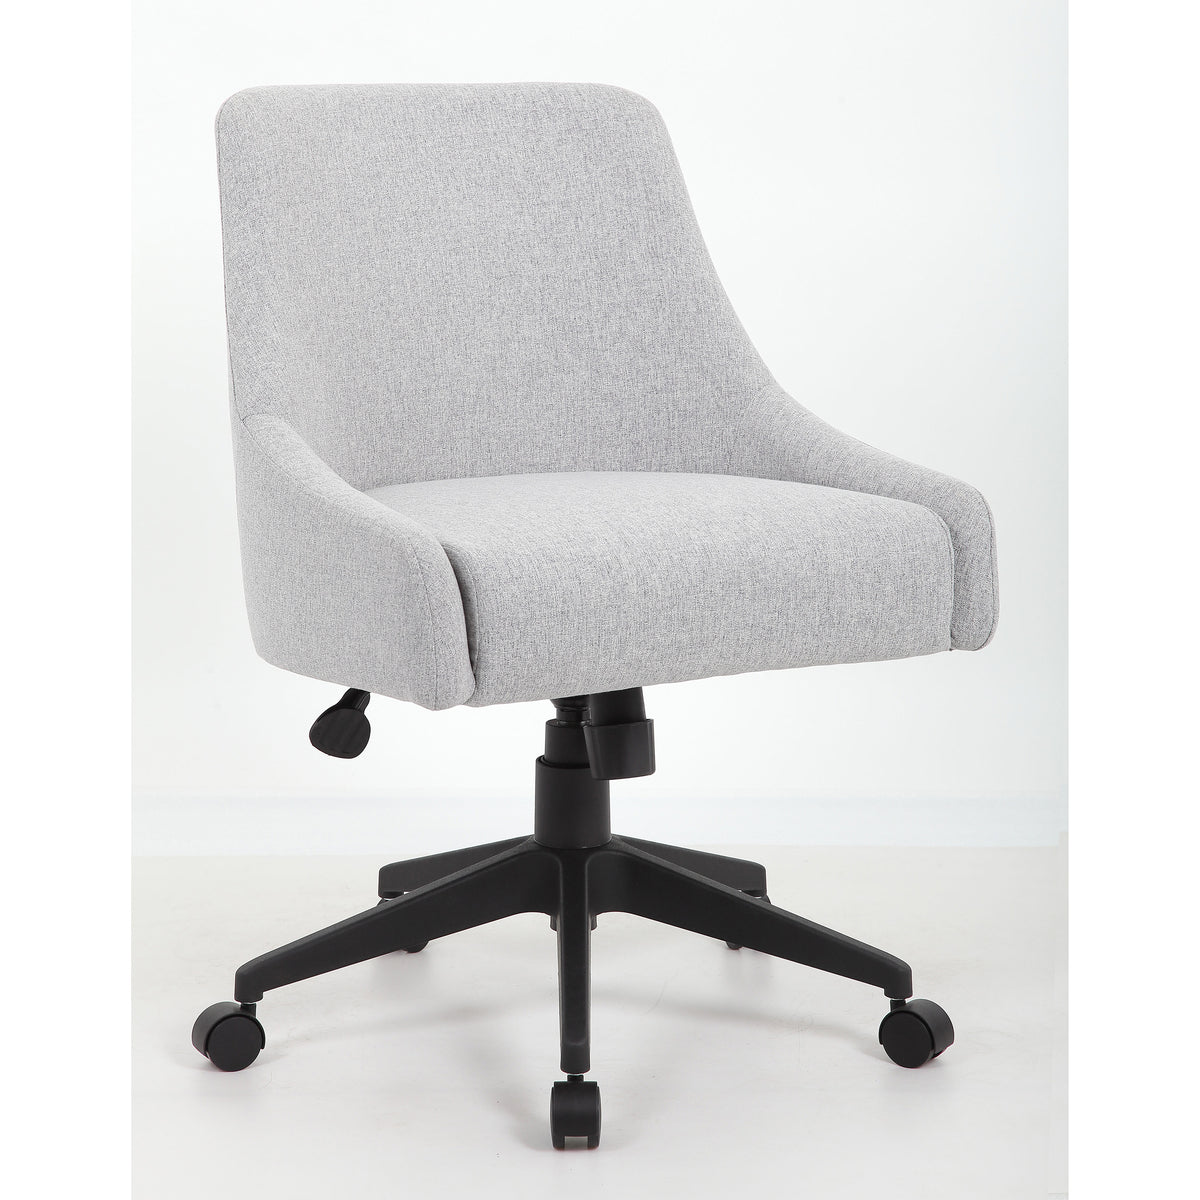 Boyle Desk Chair - Grey, B576-GY